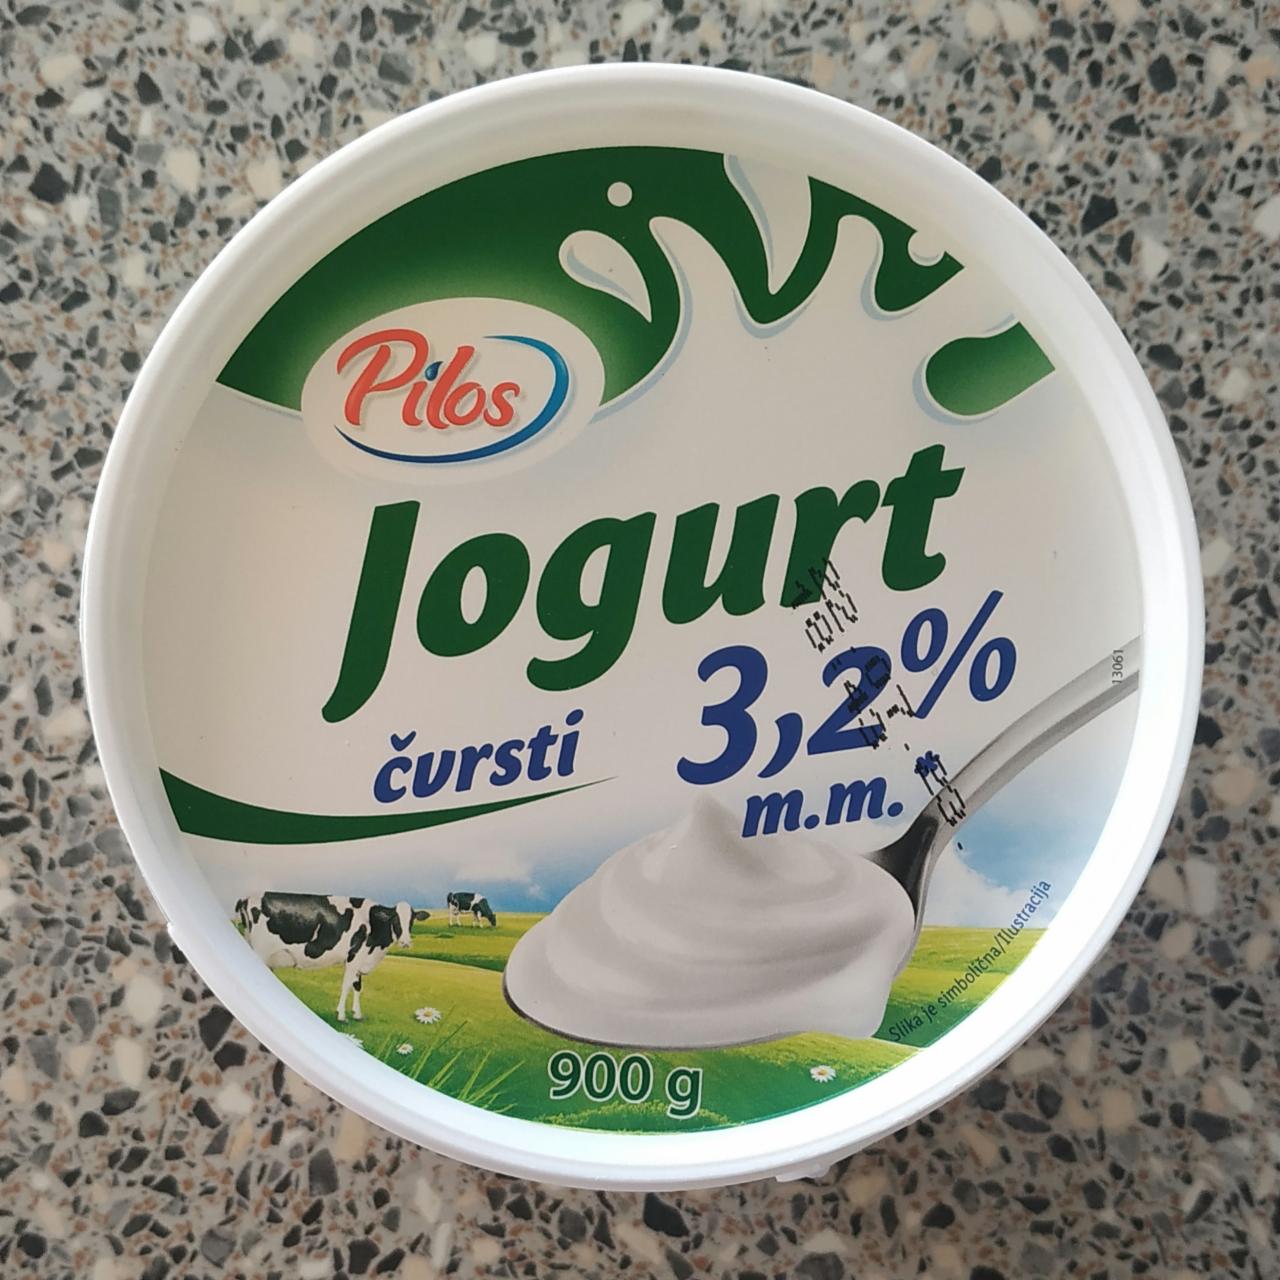 Fotografie - Jogurt cvrsti 3.2% Pilos HR Lidl